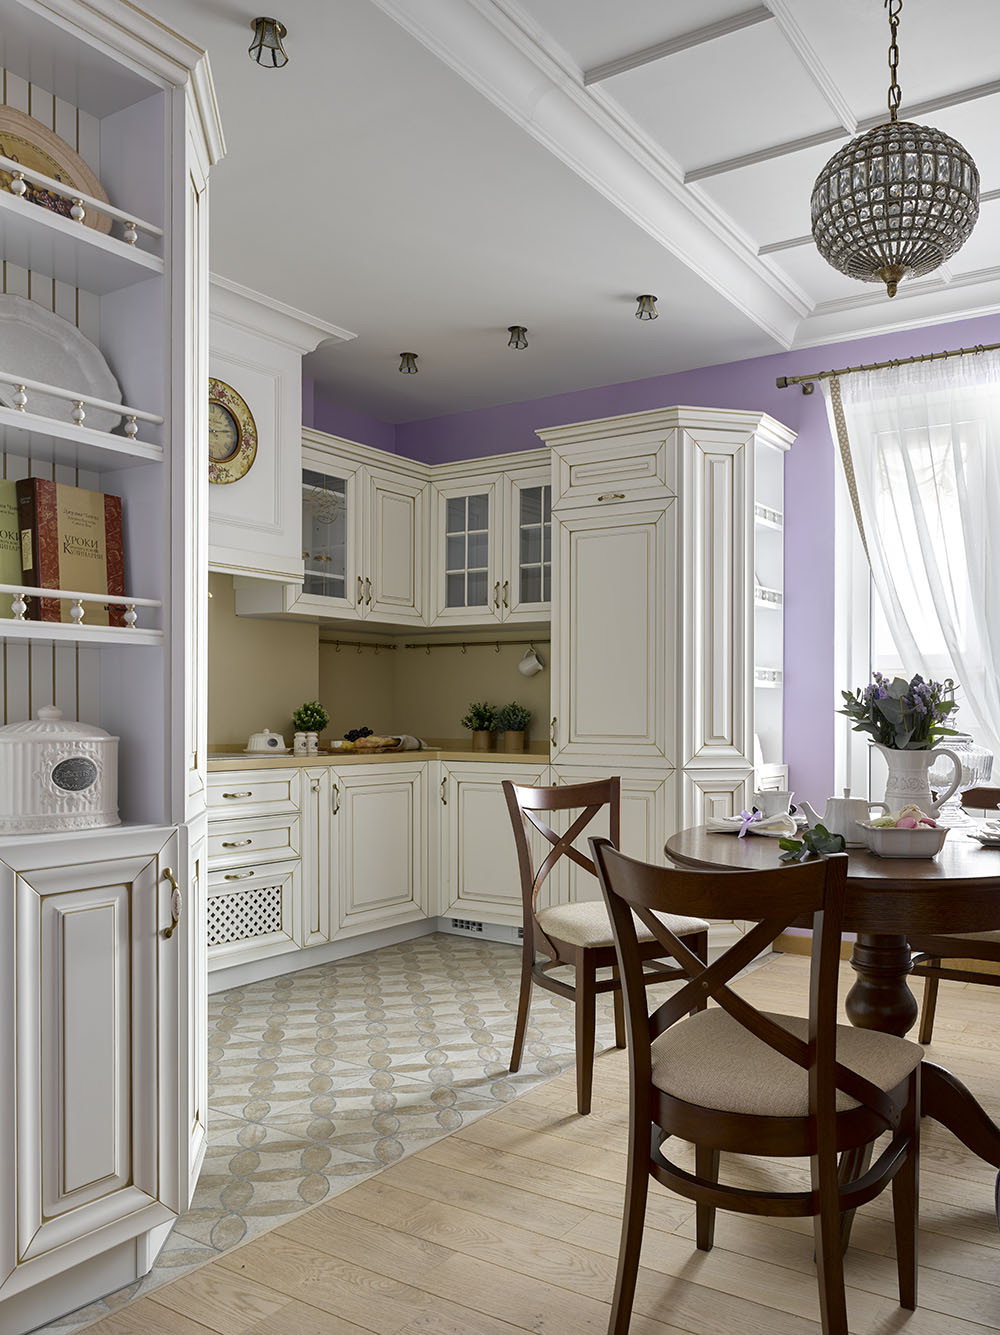 Không gian nấu nướng và ăn uống bố trí tại phòng riêng, phân vùng với nhau bằng gạch bông và gỗ lát sàn. Bếp kiểu chữ L với hệ tủ bếp màu trắng phong cách cổ điển.